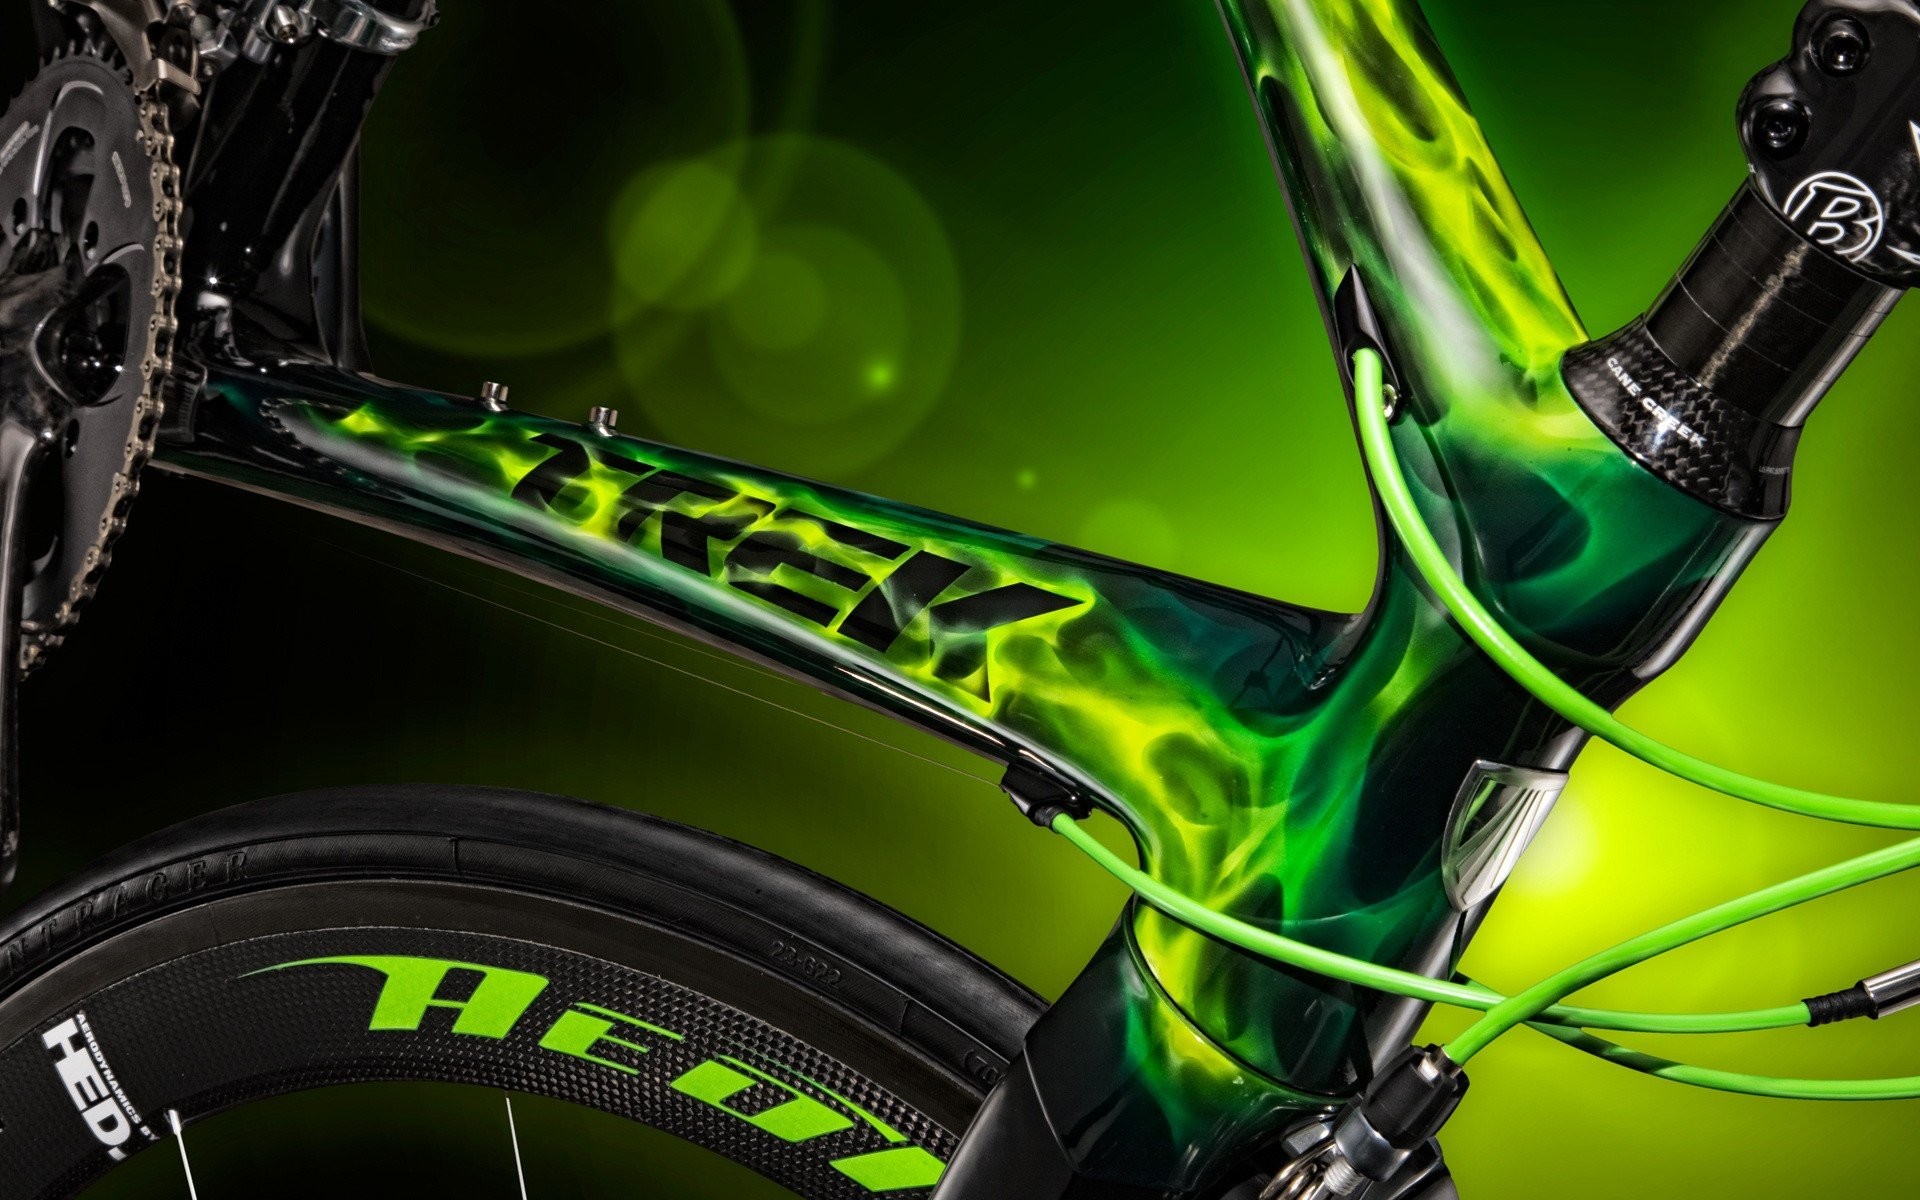 bike wallpaper hd 1920x1200,green,bicycle wheel,bicycle part,tire,spoke